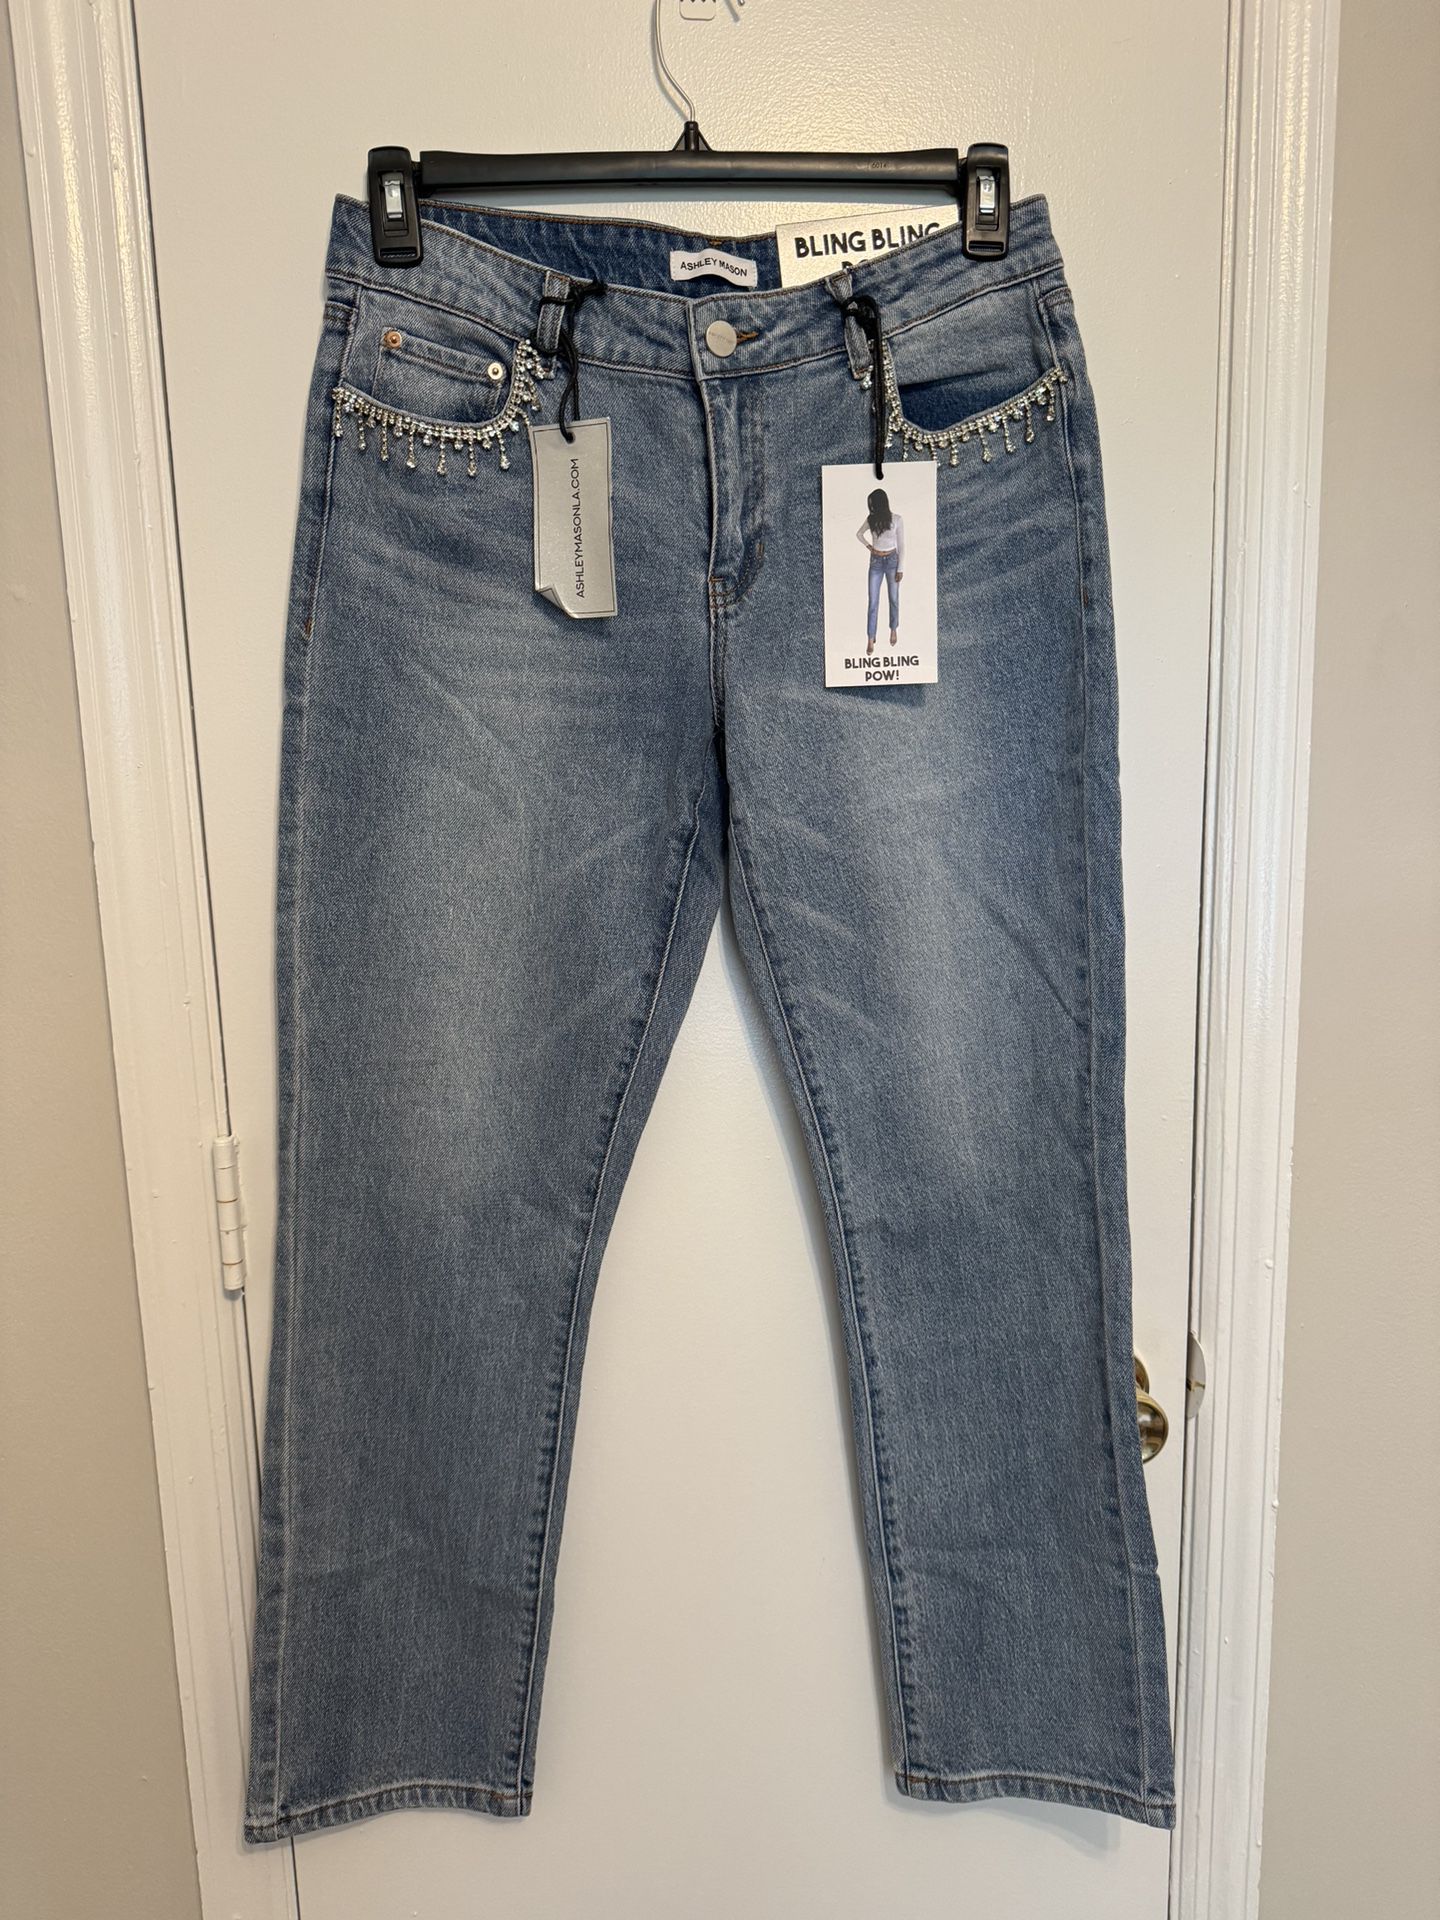 New! Ashley Mason Rhinestone Jeans Size 11/30